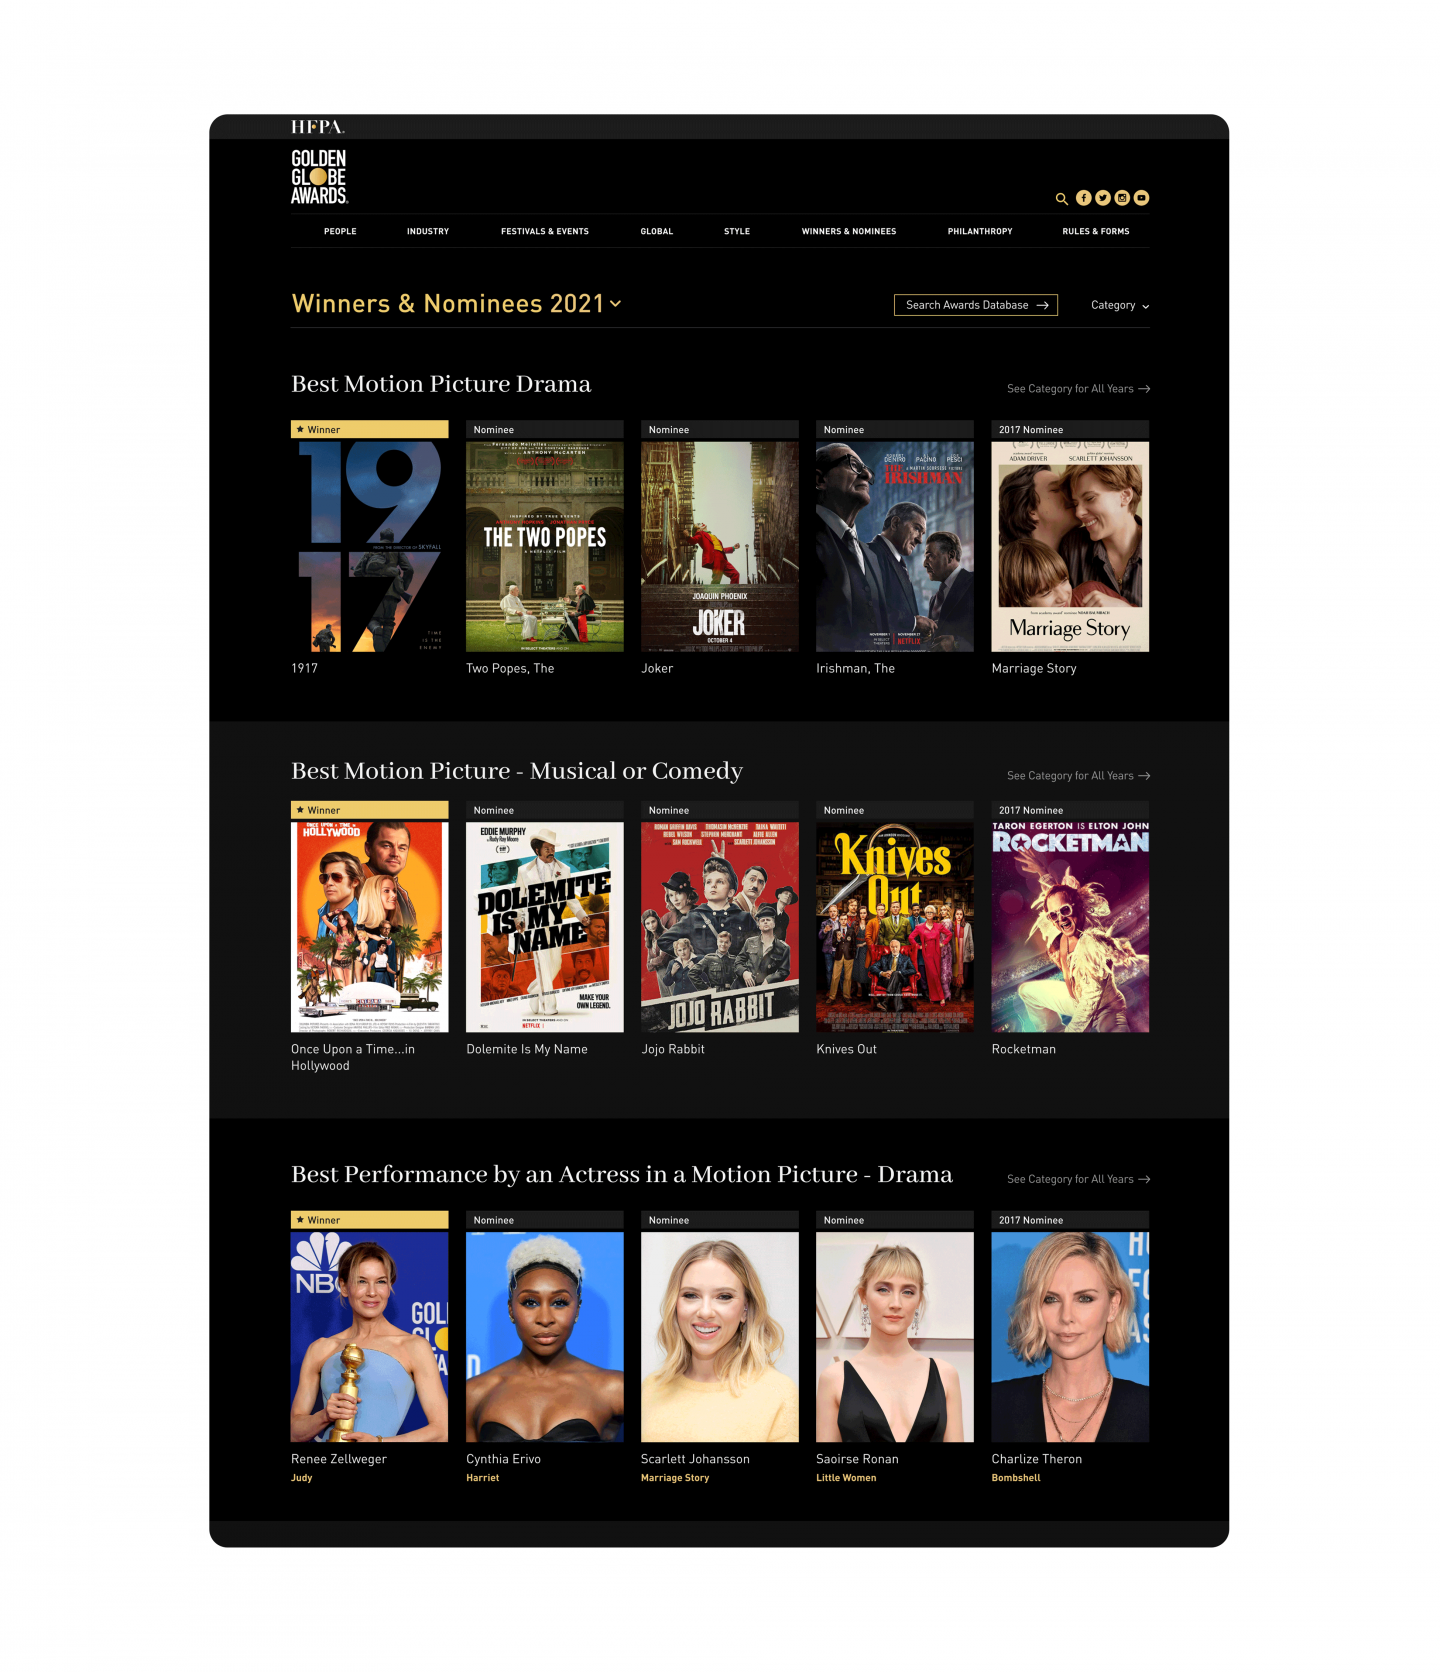 Golden Globes website mockups